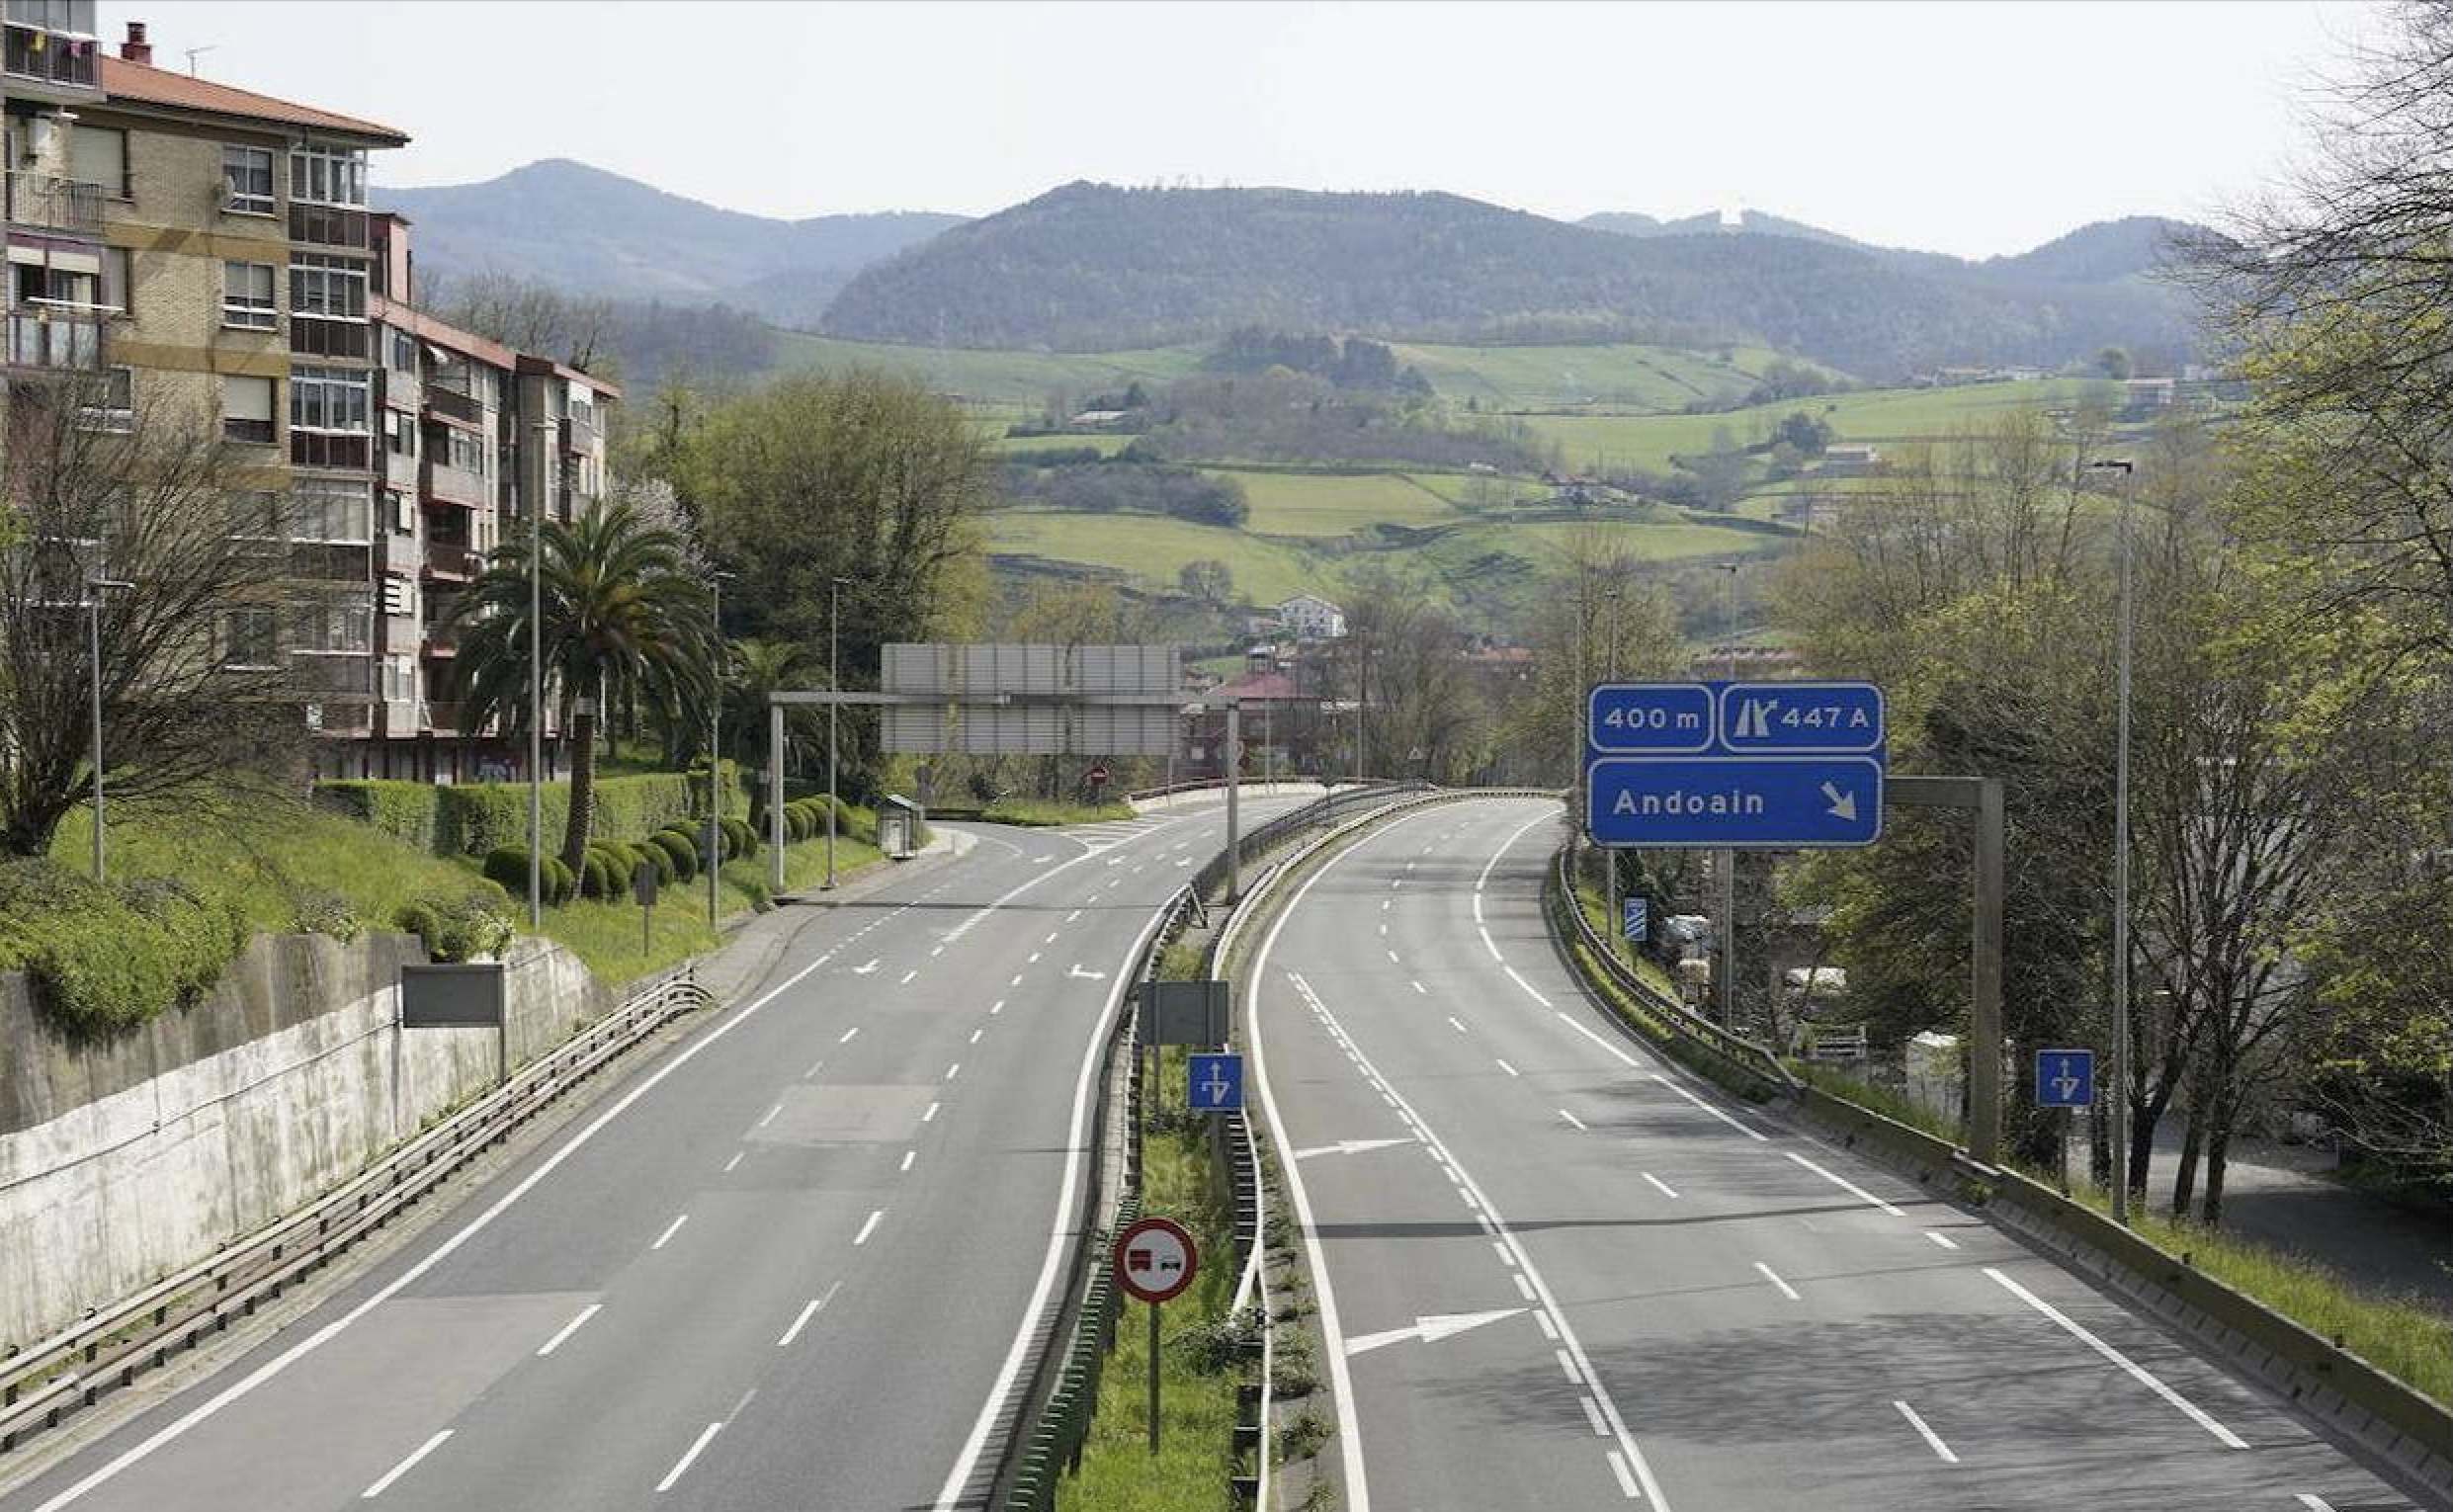 ONDOAN realiza el mantenimiento de instalaciones eléctricas y equipamiento inteligente en más de 1.000 Km de carreteras y vías ciclistas de Gipuzkoa